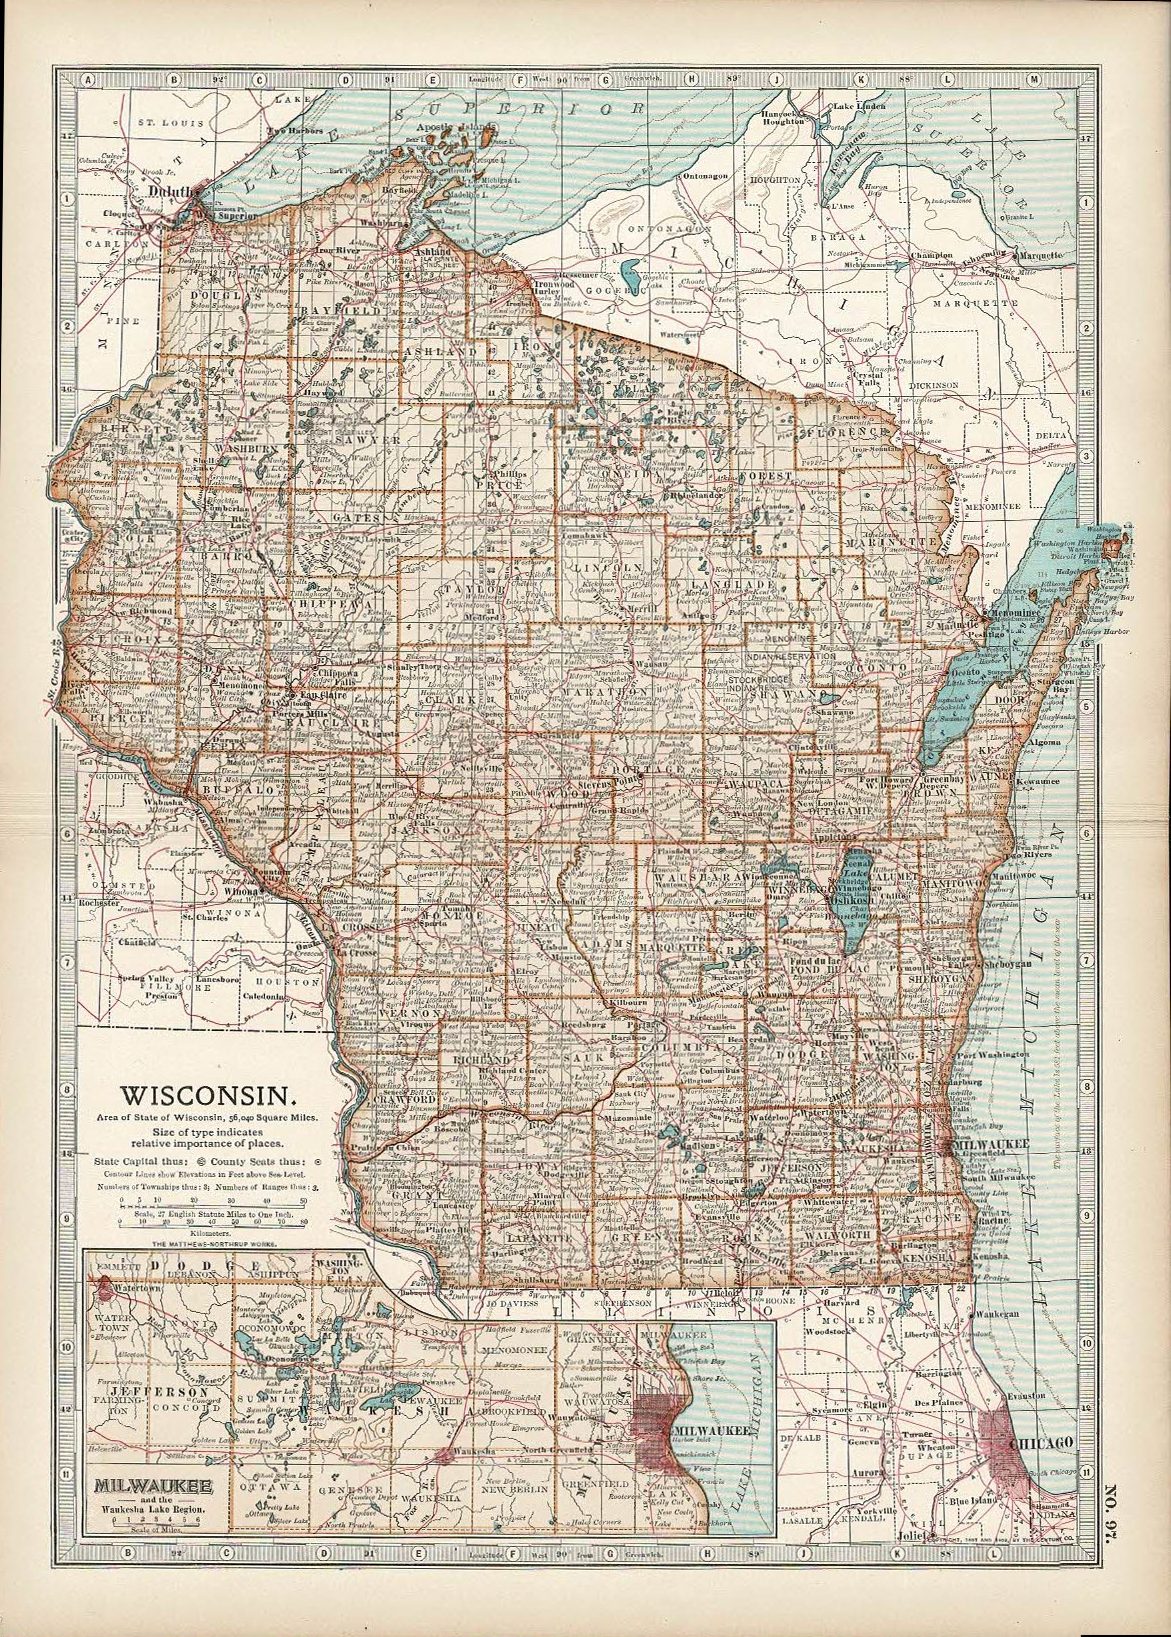 Wisconsin, Encyclopaedia Britannica 1903